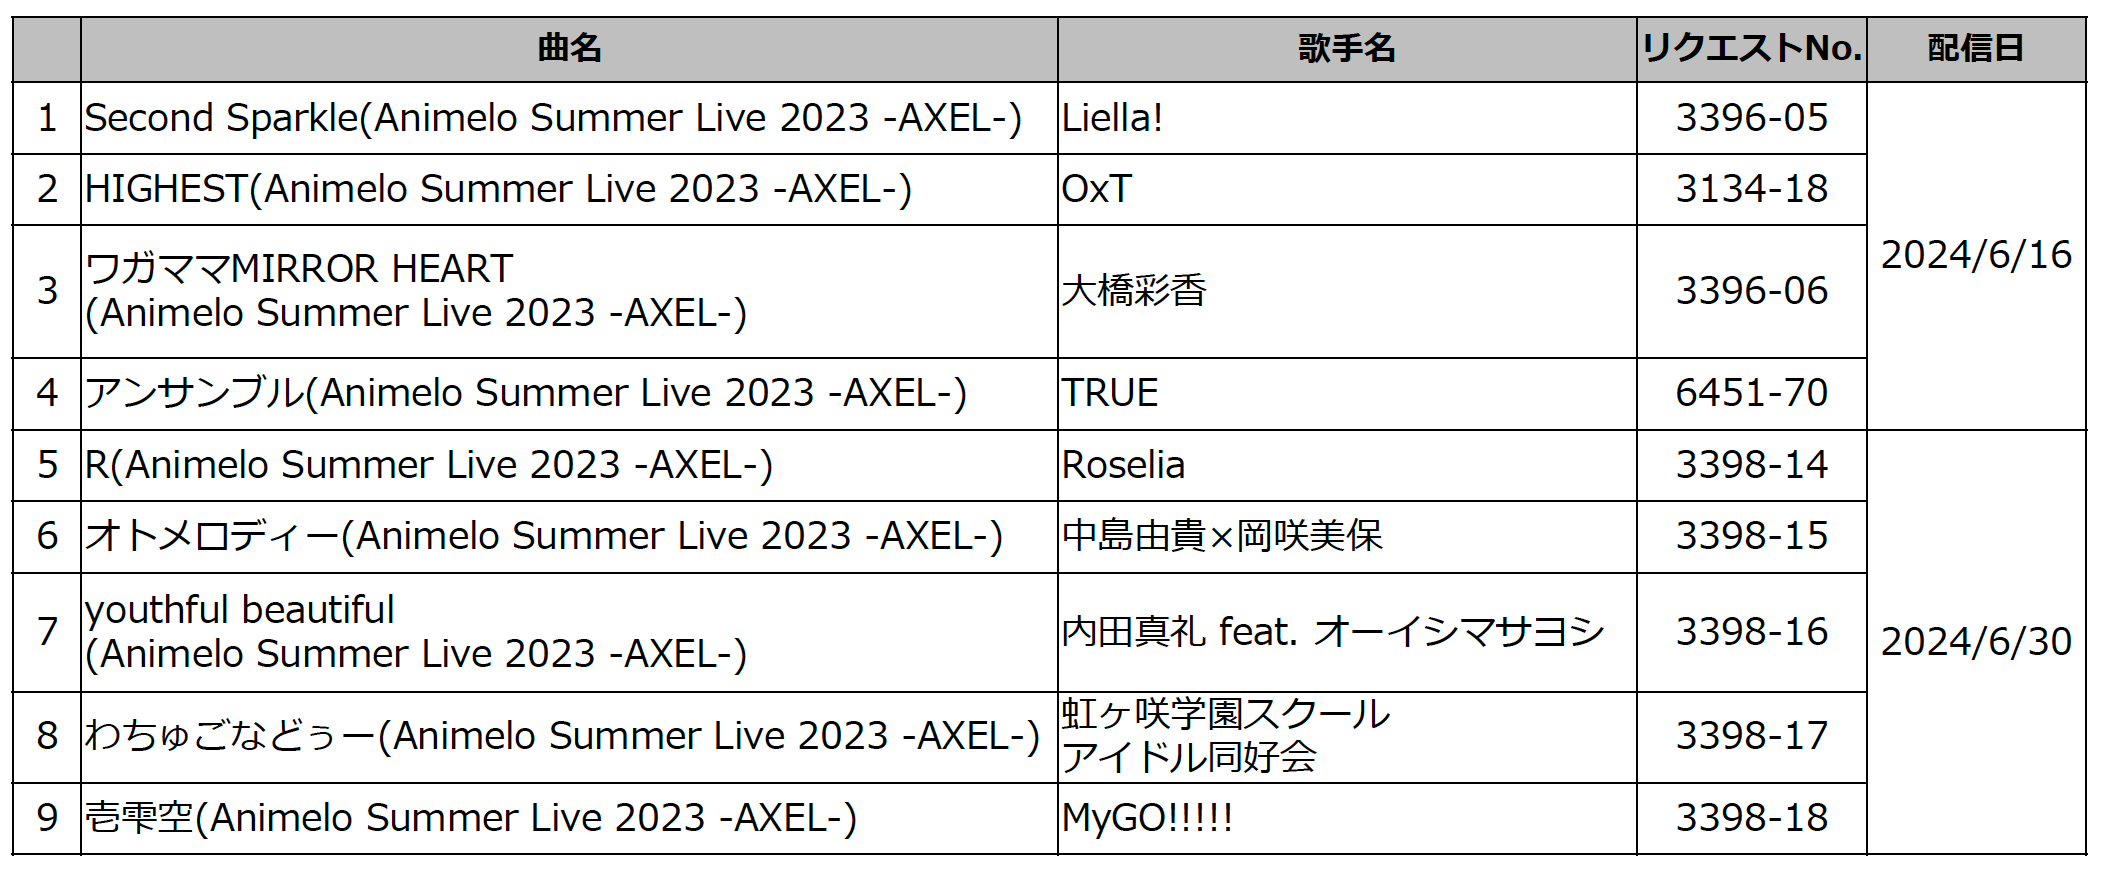 世界最大のアニソンイベント「Animelo Summer Live 2024 -Stargazer-」とのコラボレーション企画を6月17日よ...